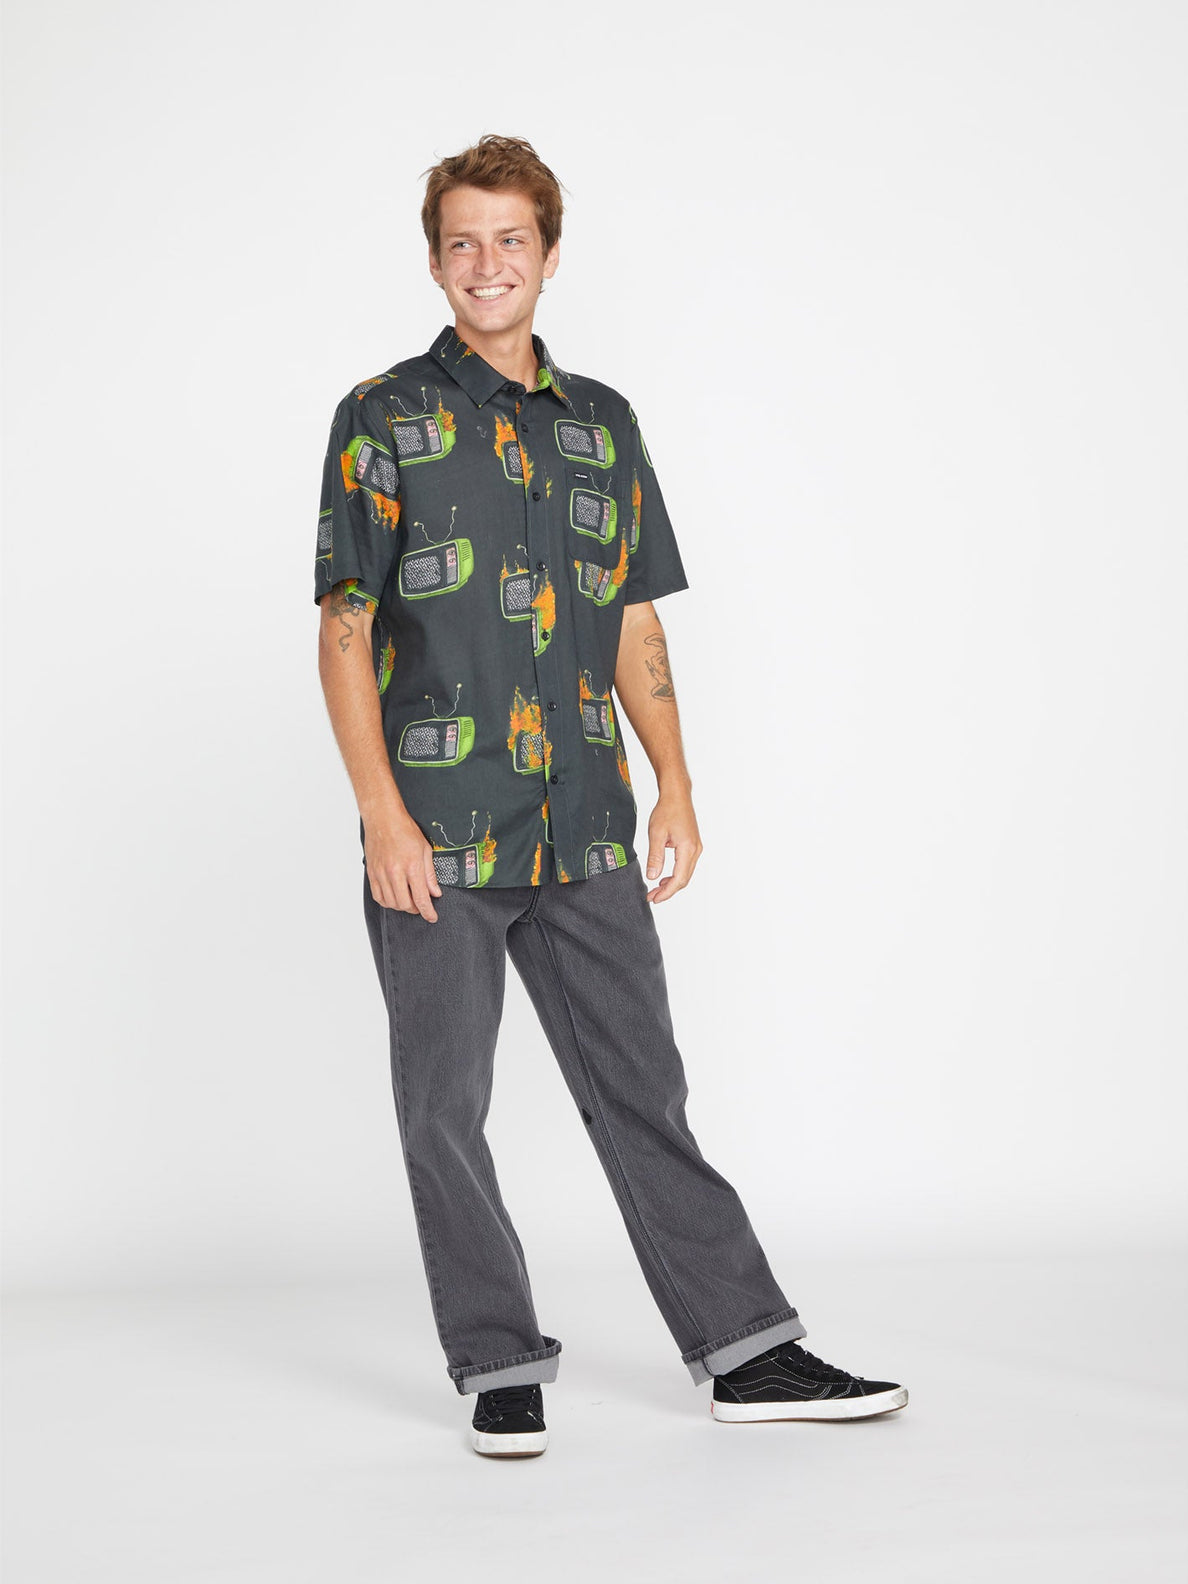 Volcom Justin Hager gewebtes schwarzes Hemd | Kurzarmhemden | Meistverkaufte Produkte | Männershirts | Neue Produkte | Neueste Produkte | Sammlung_Zalando | Volcom-Shop | surfdevils.com